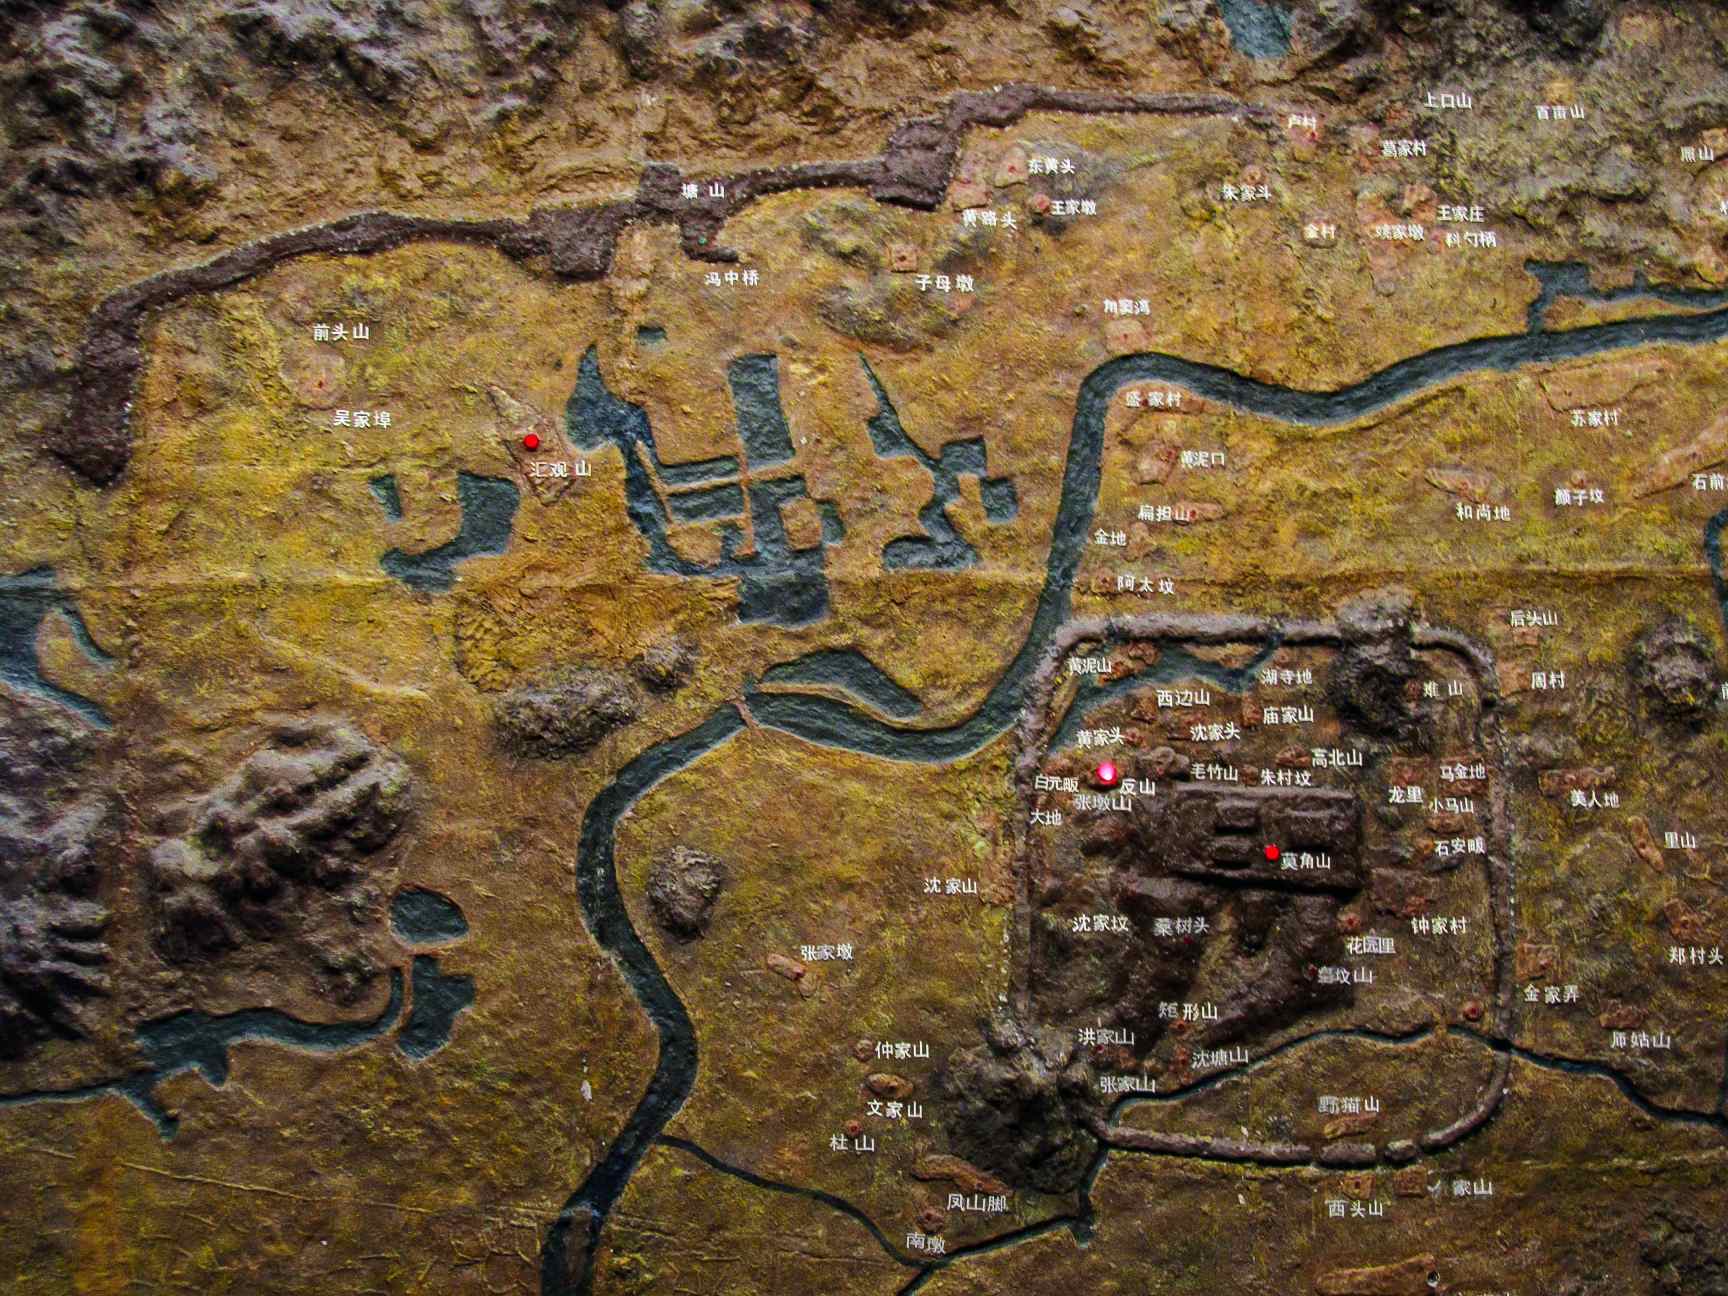 Liangzhu ősi városának modellje, a Liangzhu Múzeumban látható.